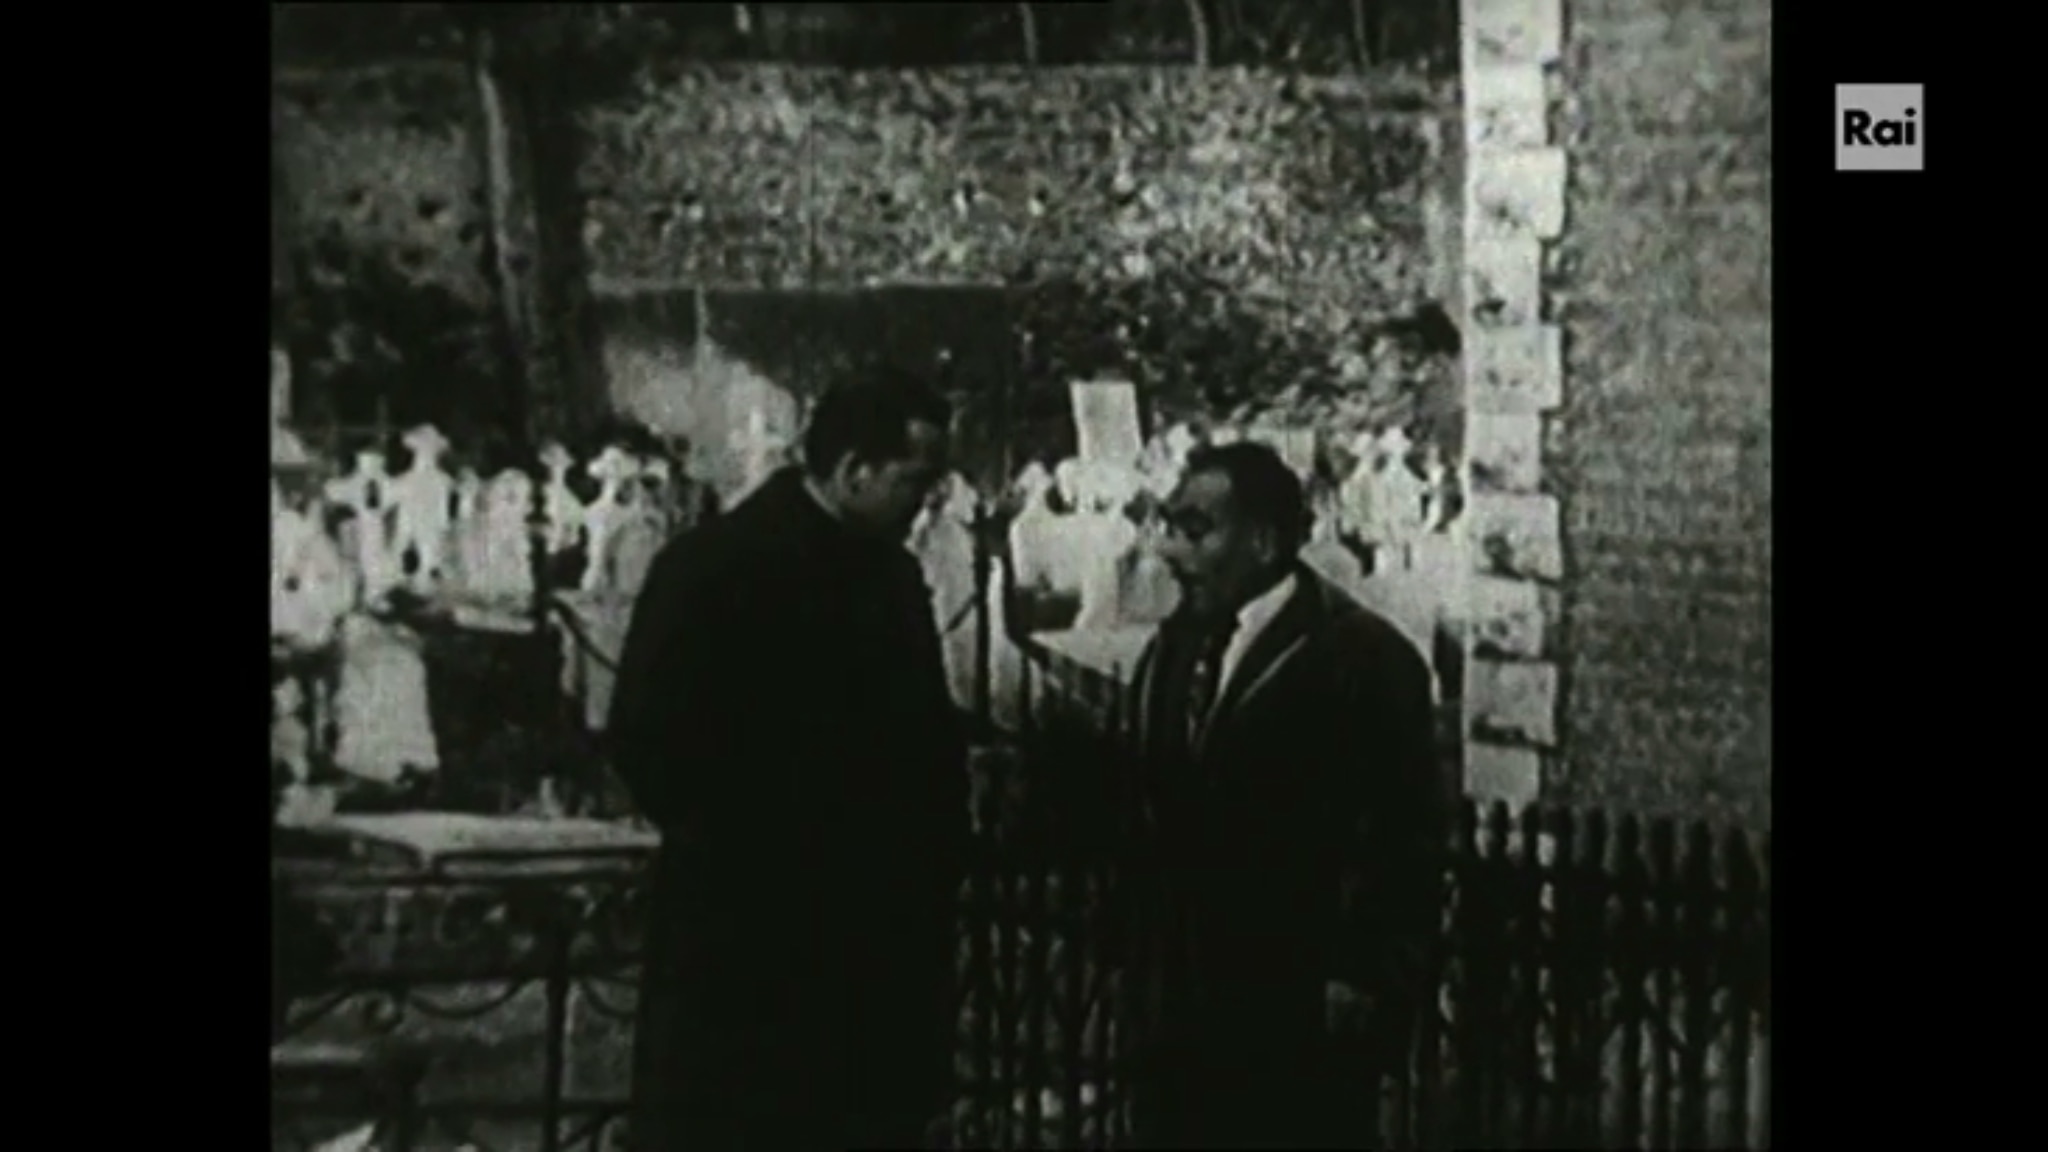 L'inchiesta di Gianni Bisiach sulla Mafia datata 1962: "Rapporto da Corleone"